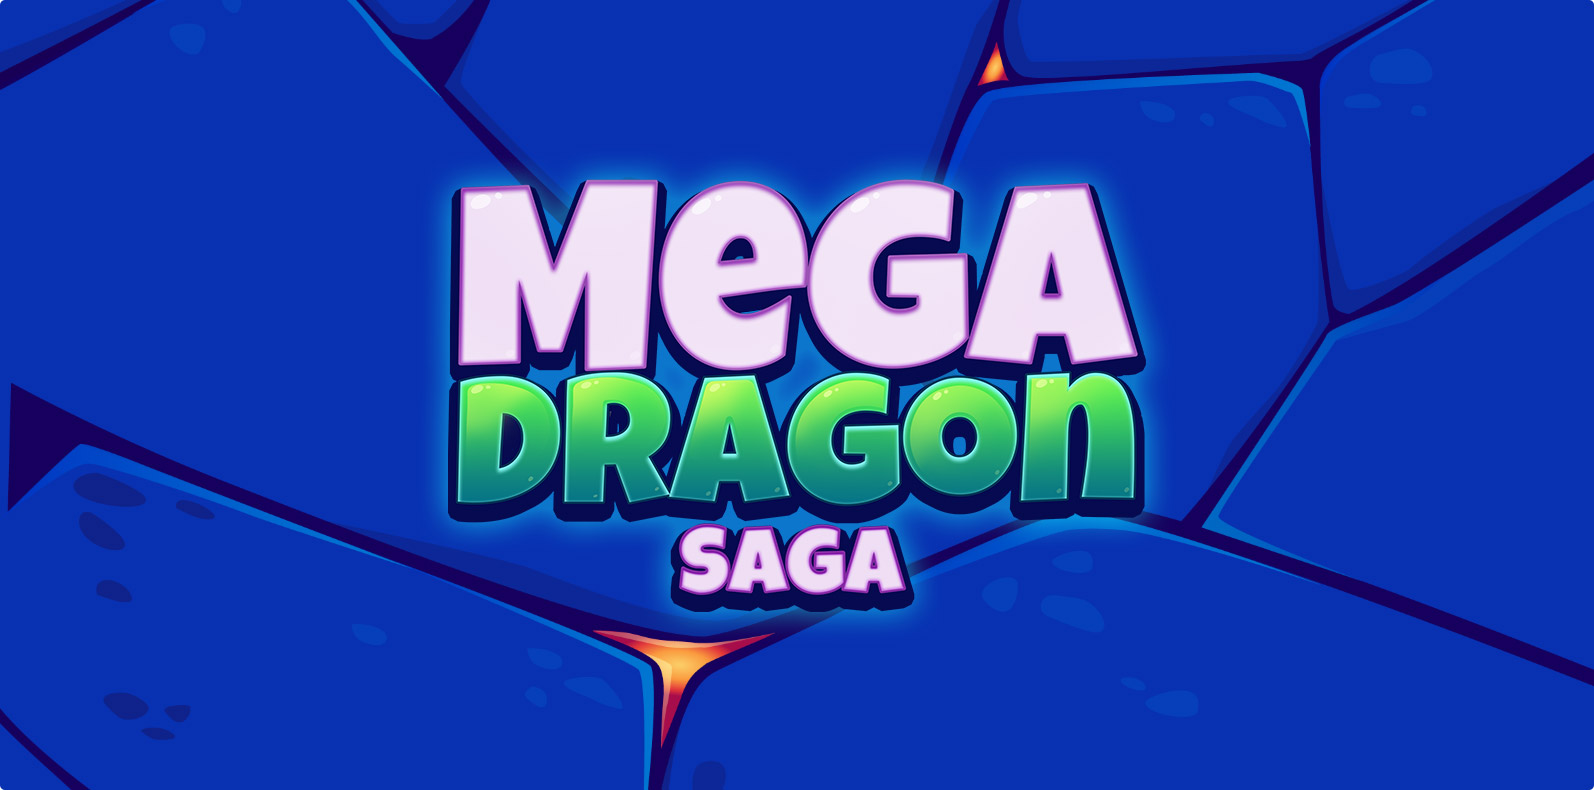 Mega Dragon Saga - Hyper casual mobile game